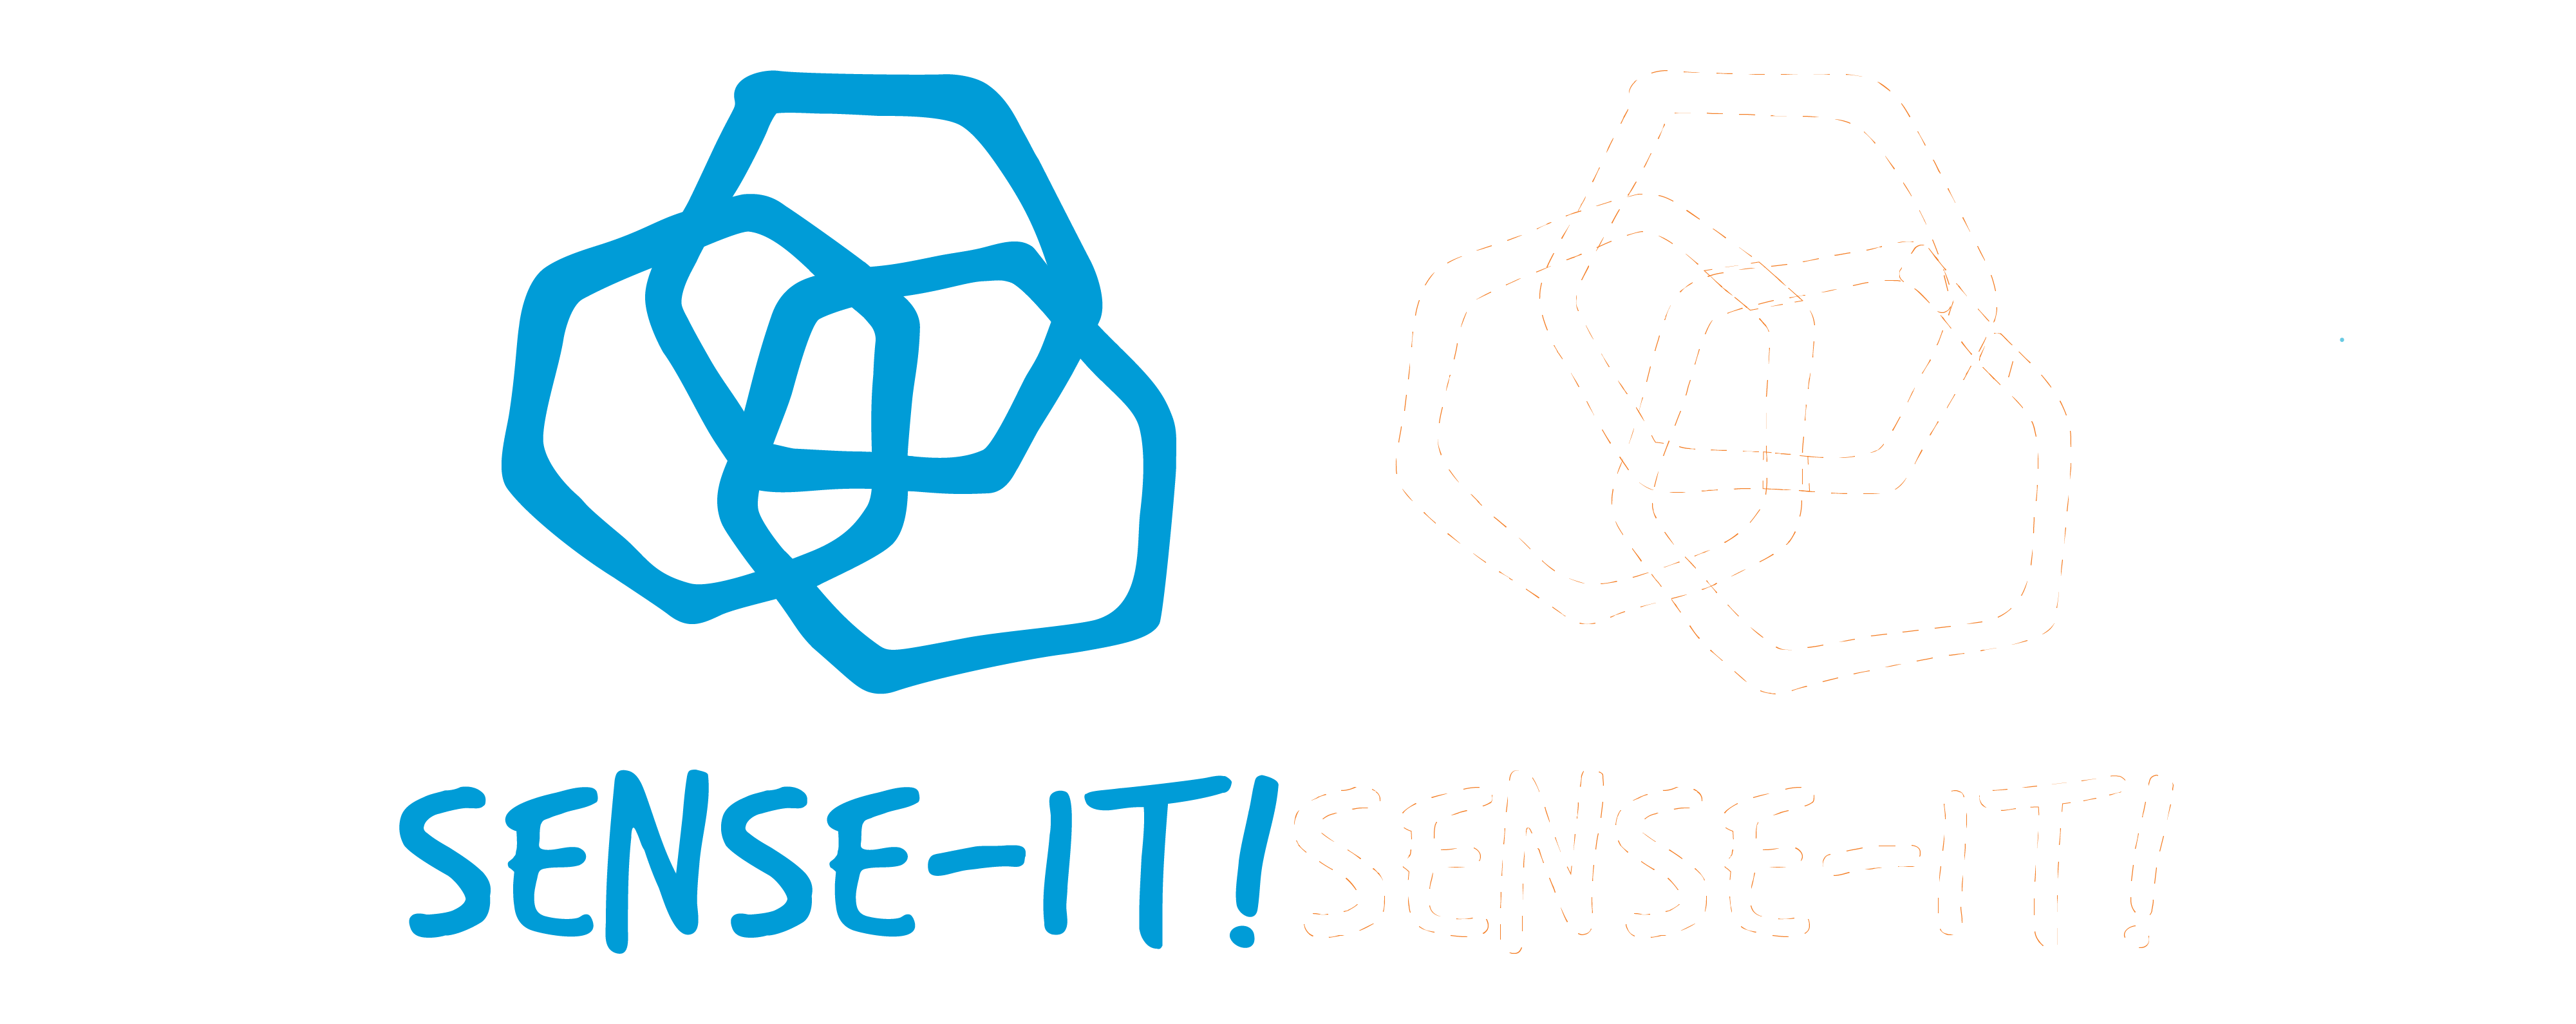 Left: blue Sense-it logo. Right: faint orange outline of sense-it logo to mimic after-image.